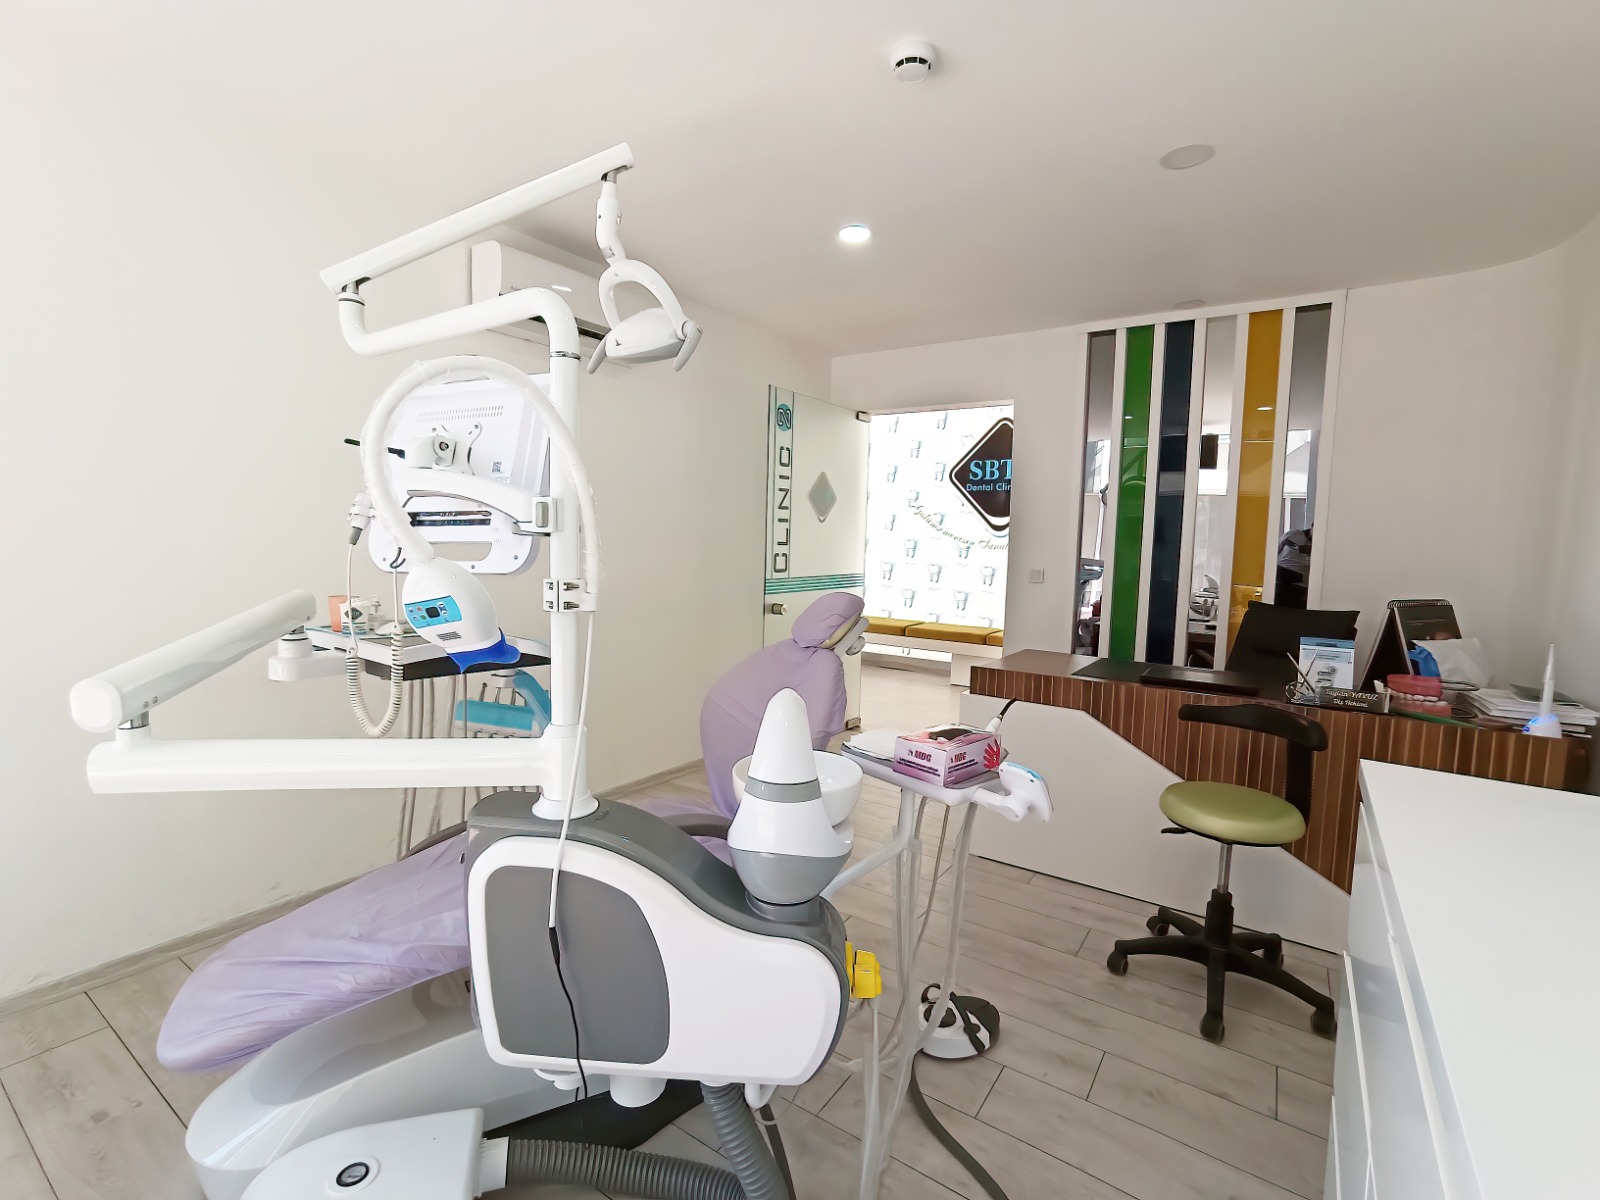 SBT Dental Clinic